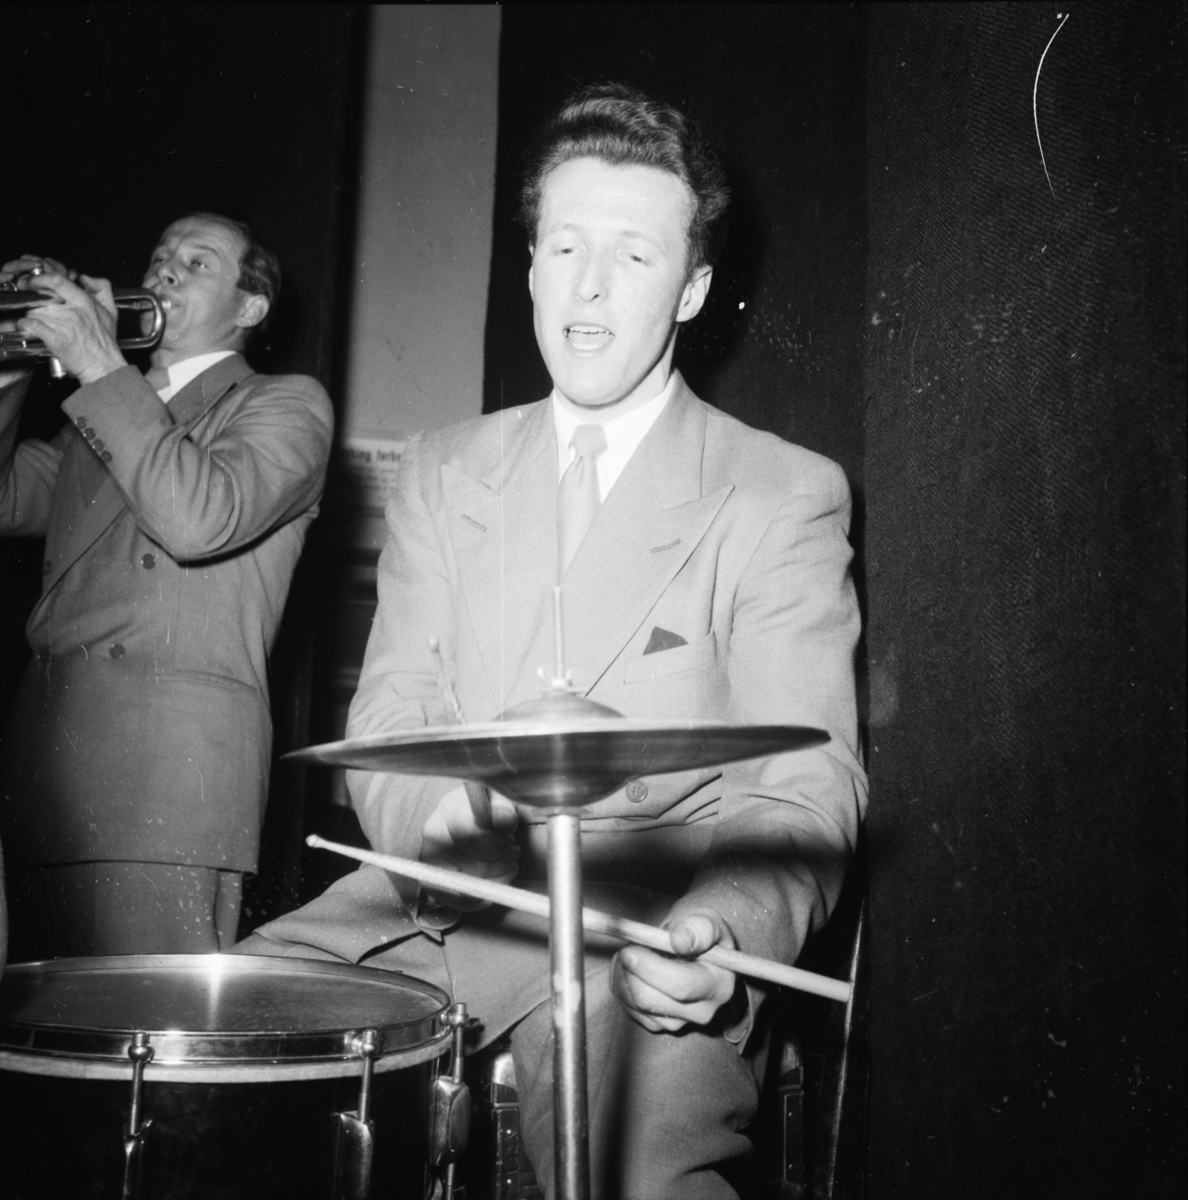 Vardens arkiv. "Byforeningen i Festiviteten. B.la. Lommeruds orkester"  17.02.1954